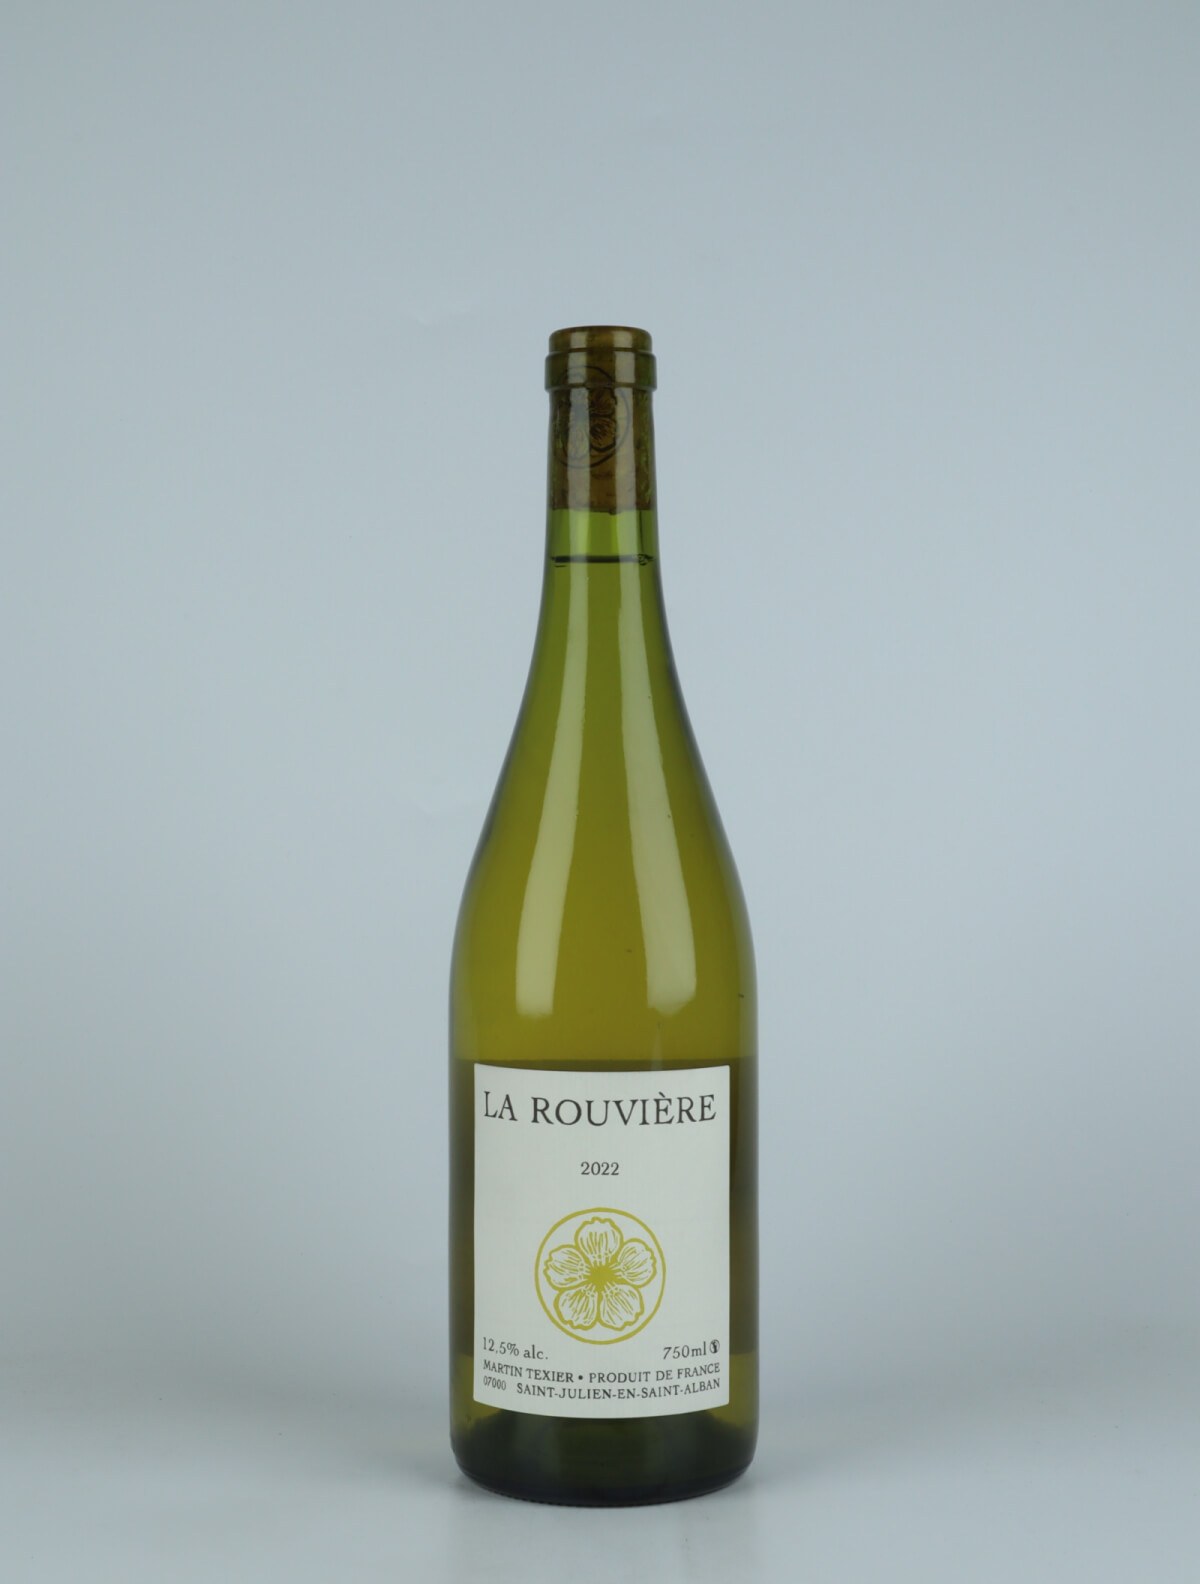 En flaske 2022 La Rouvière Hvidvin fra Martin Texier, Rhône i Frankrig